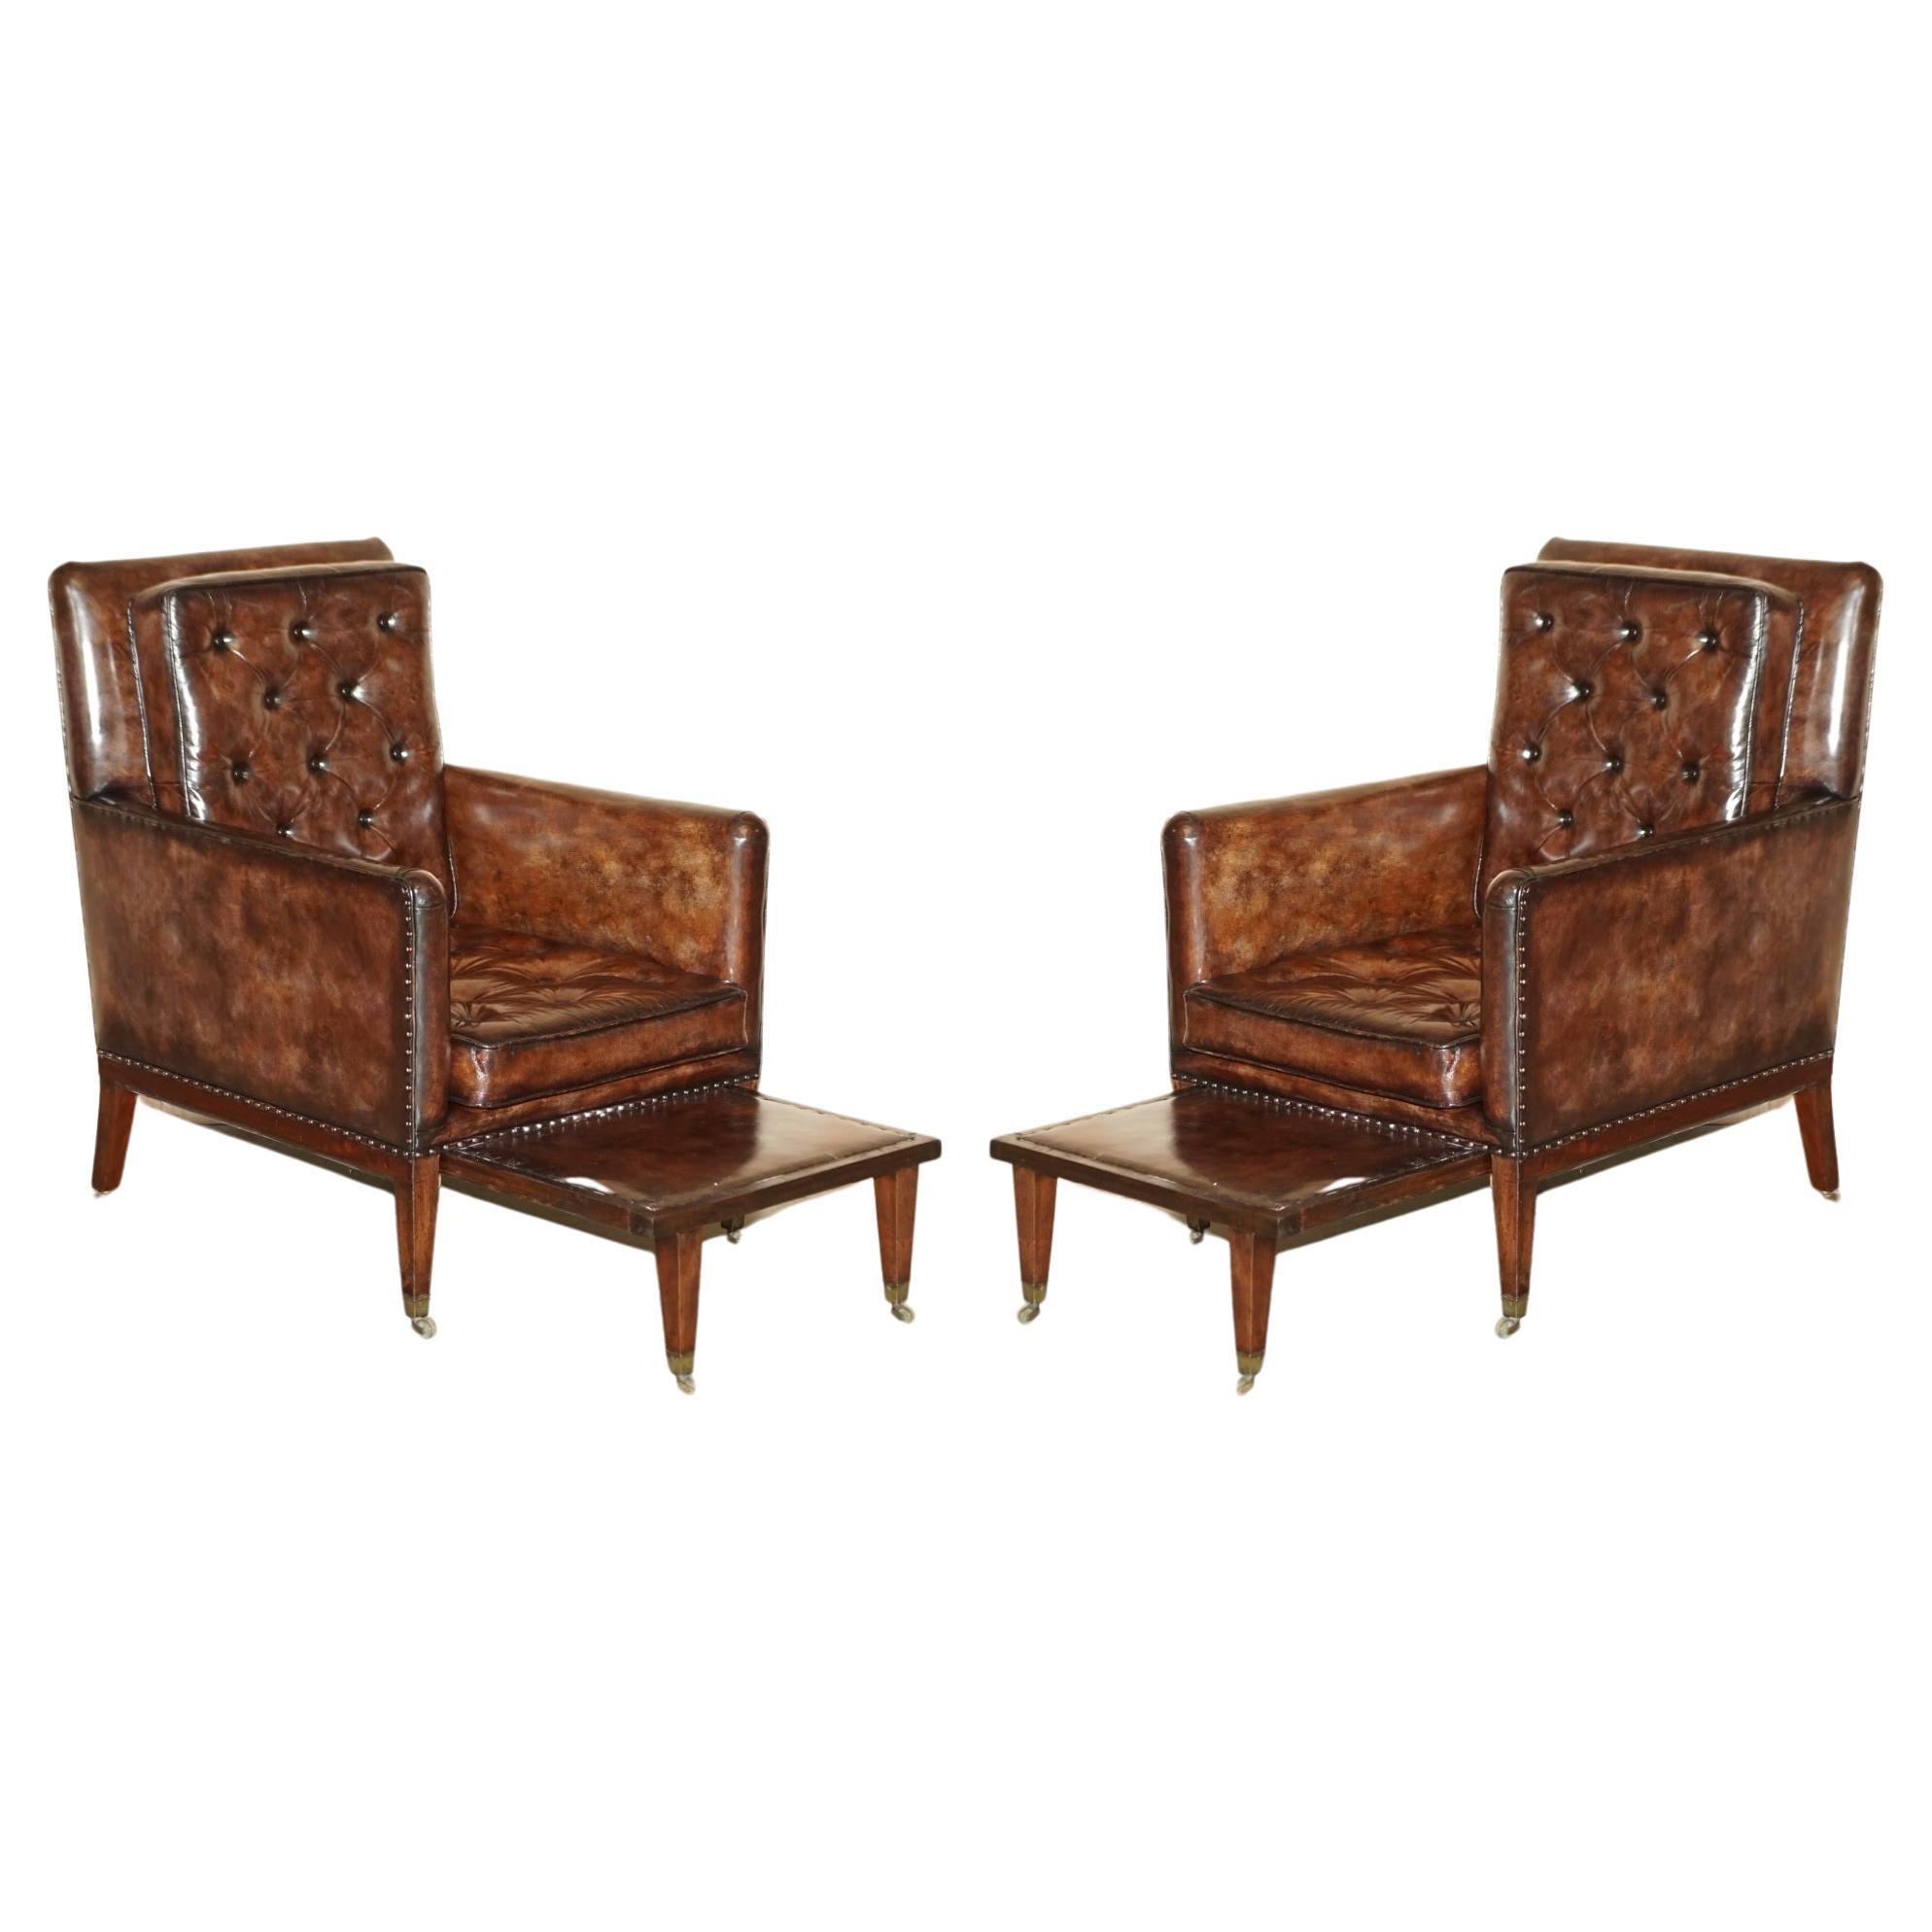 Paar antike Chesterfield-Sessel aus braunem Leder im Regency-Stil mit ausladenden Hockern